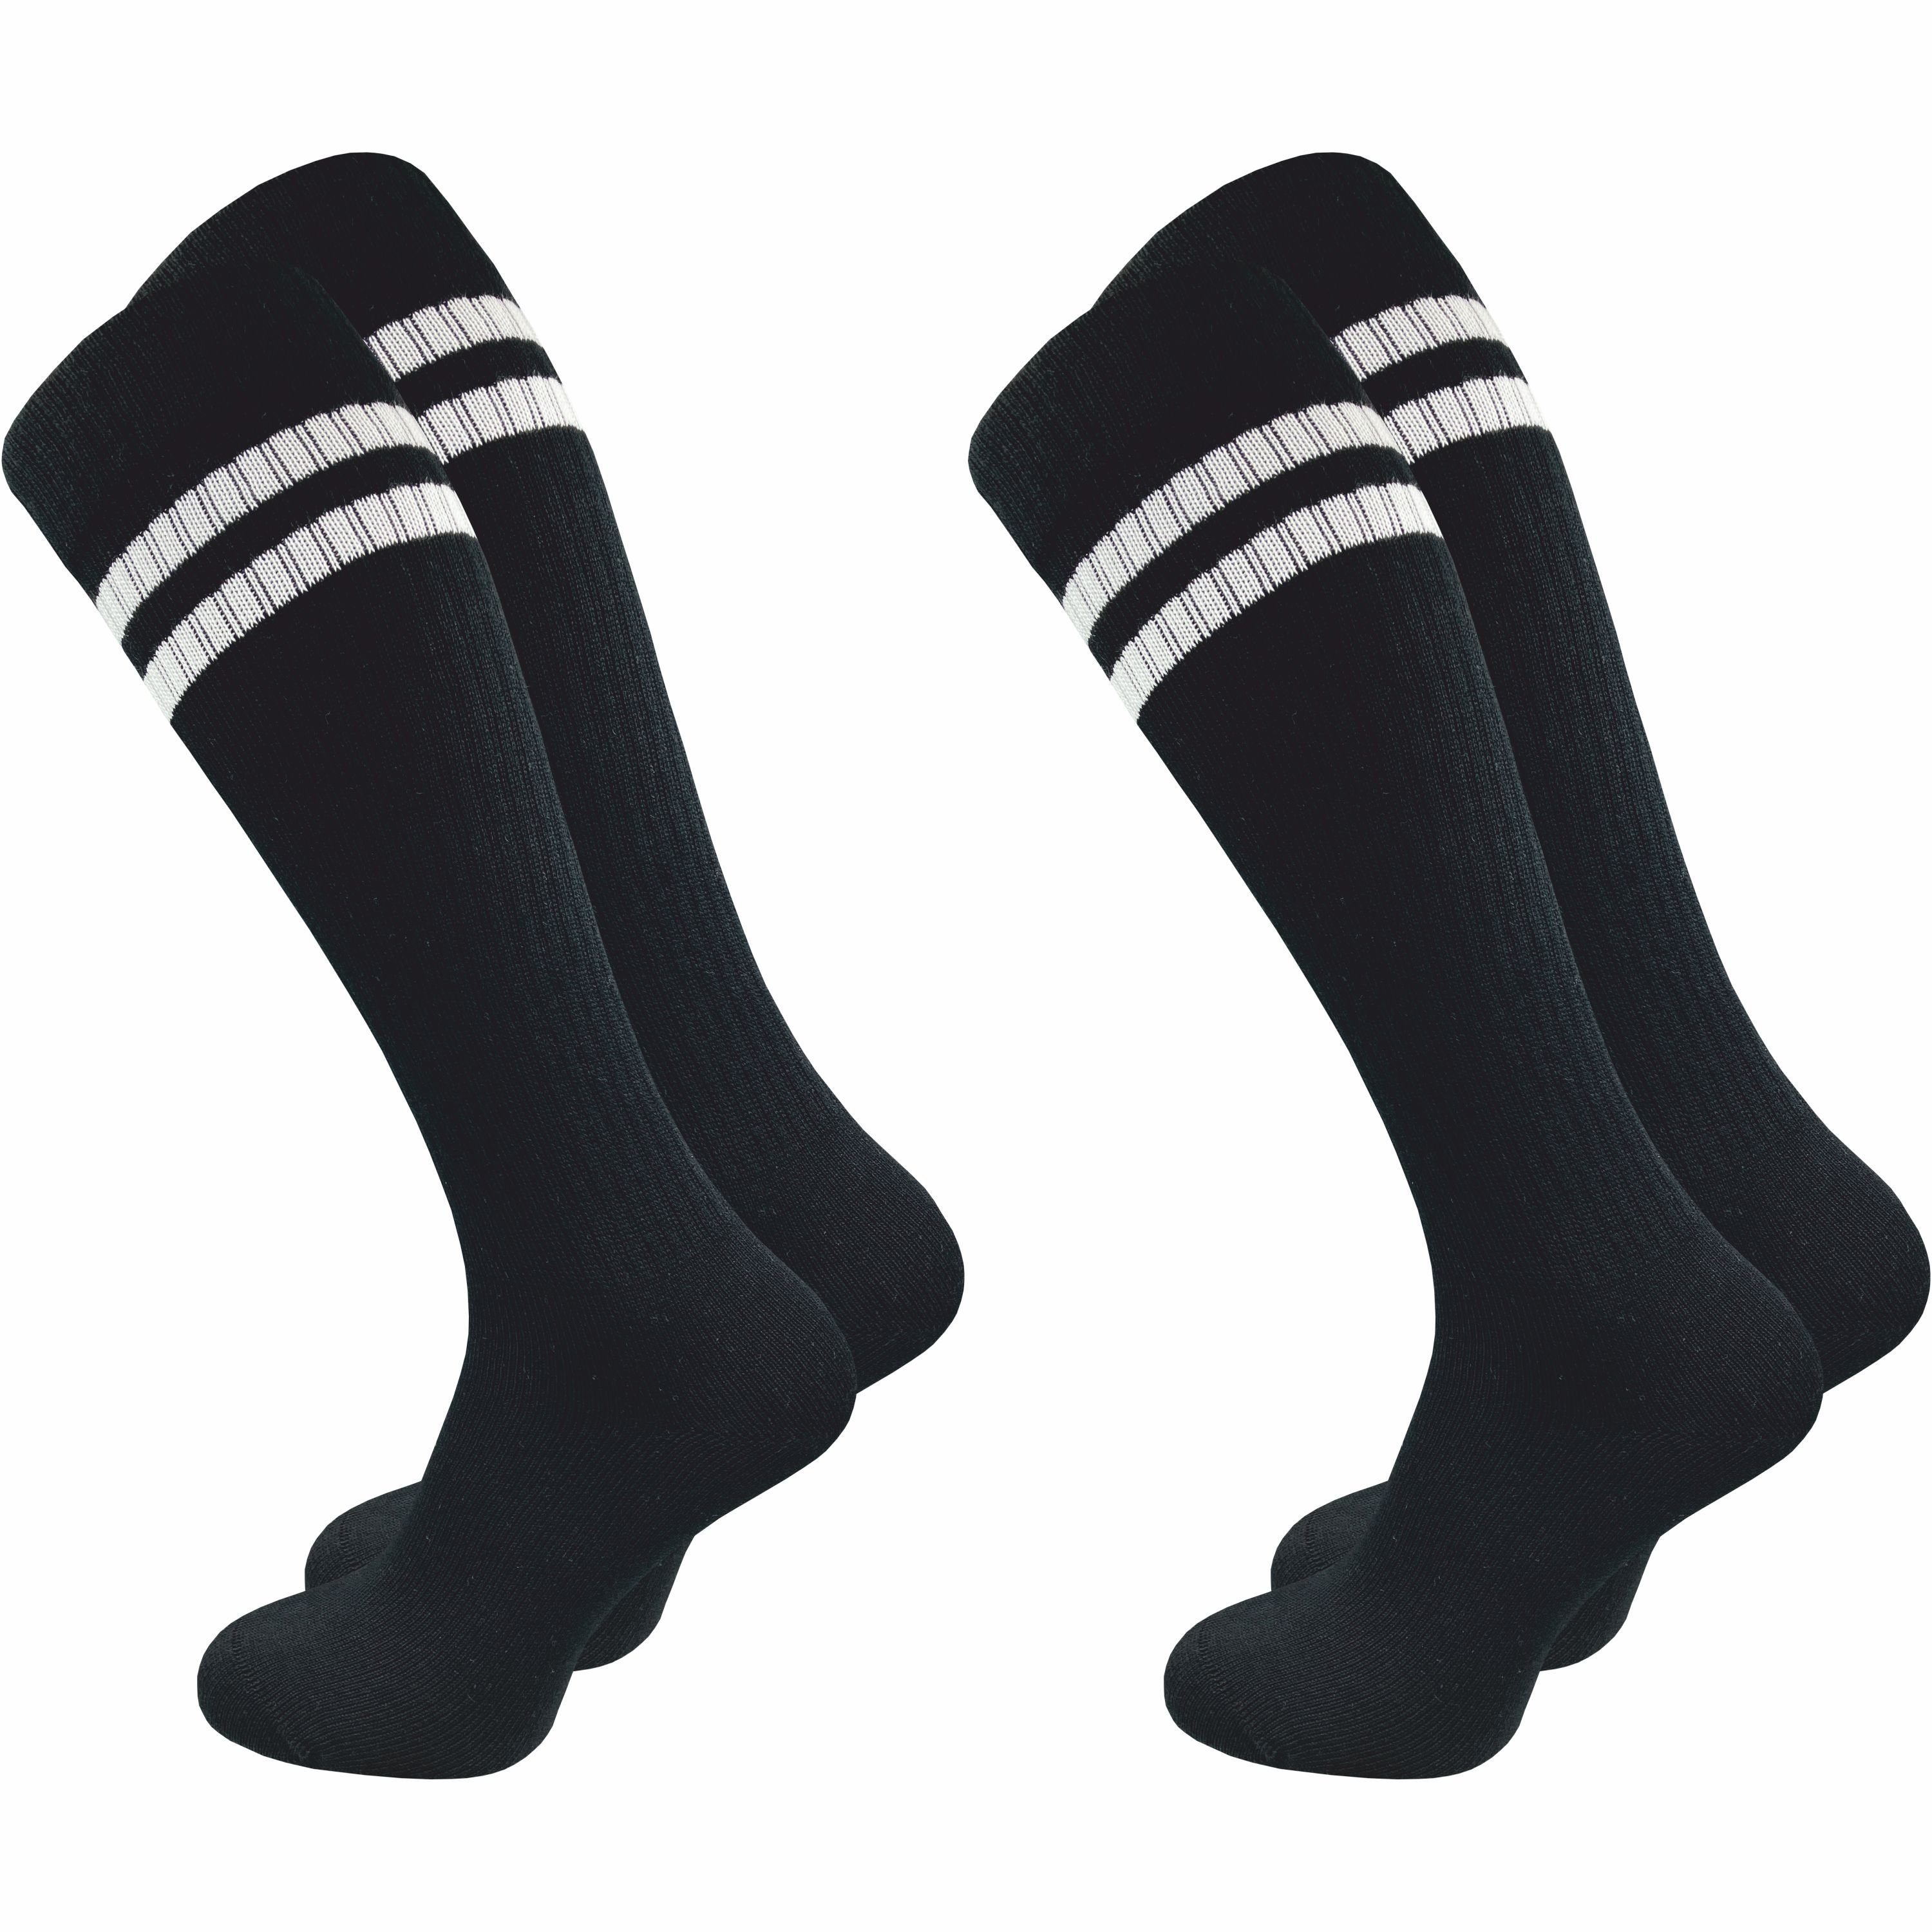 GAWILO Kniestrümpfe Retro für Herren mit stylischen Streifen - weiß & schwarz - Baumwolle (2 Paar) Knielange Socken im sportlichen Look - auch zum Wandern geeignet Schwarz mit Streifen | Wandersocken